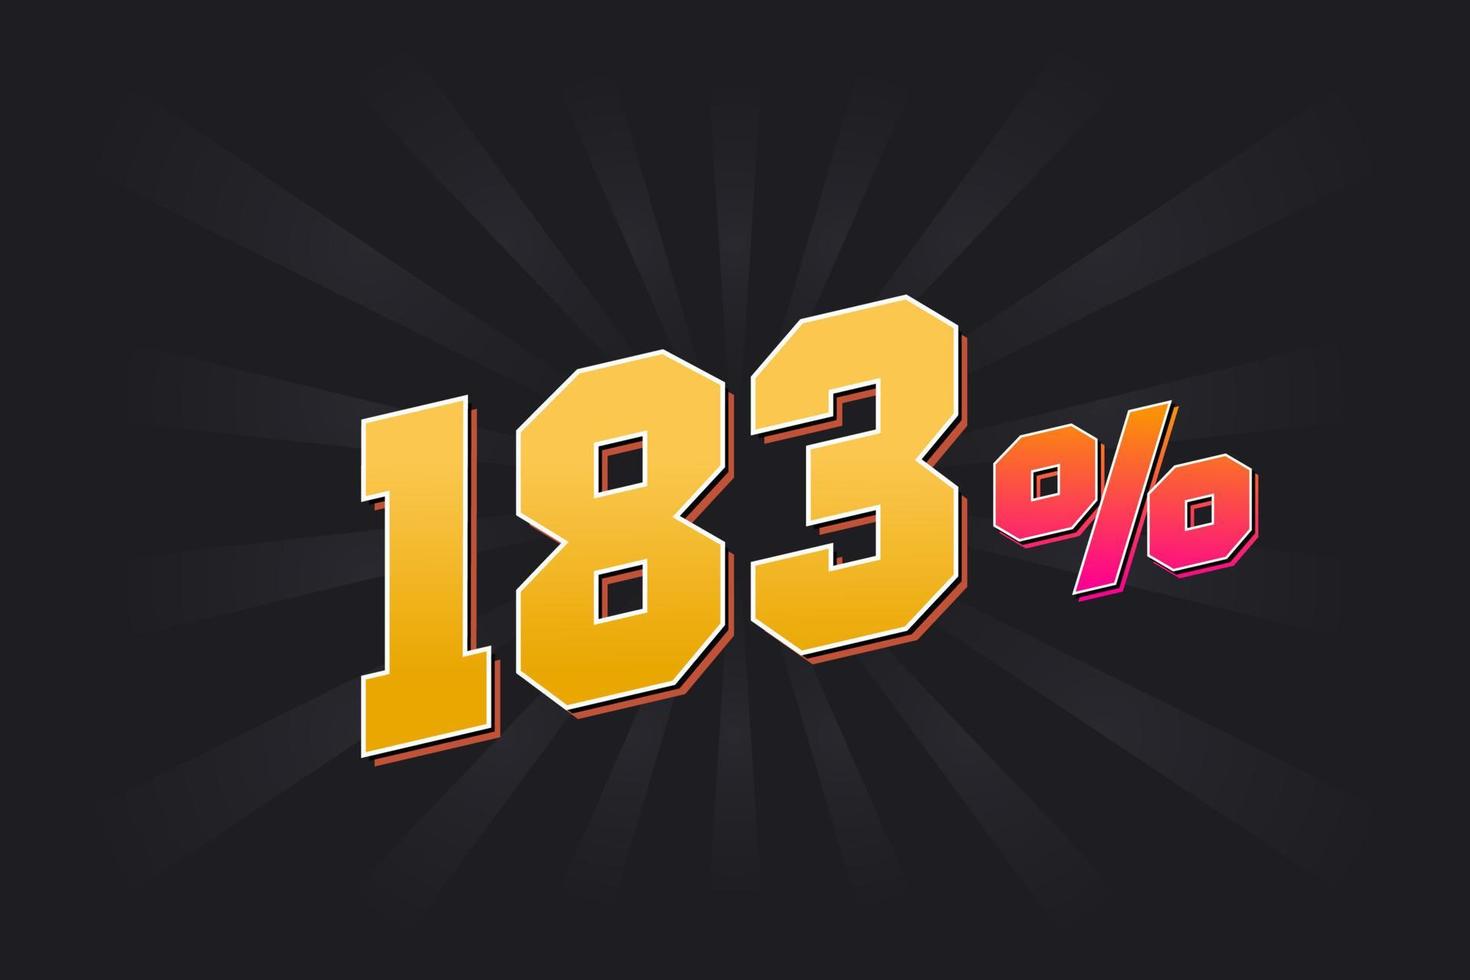 183 banner de desconto com fundo escuro e texto amarelo. 183 por cento de design promocional de vendas. vetor